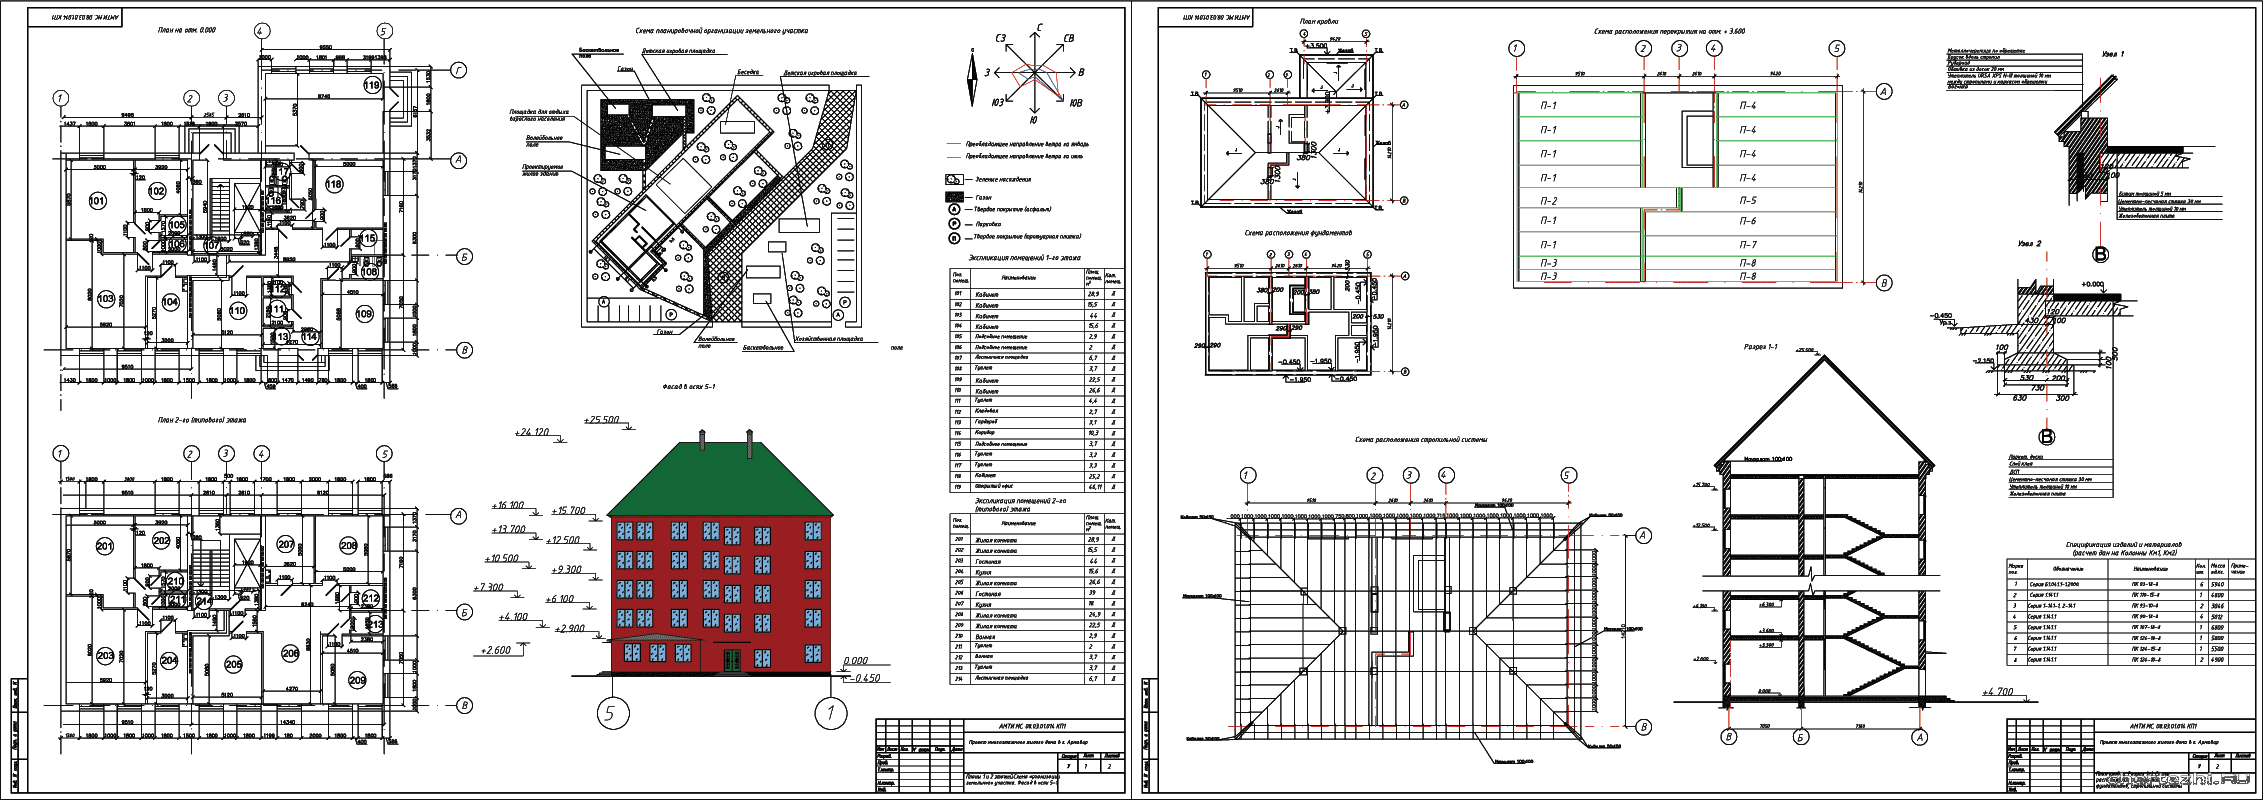 Курсовой проект - 5-ти этажный многоквартирный жилой дом 24,150 х 20,377 м в г. Армавир